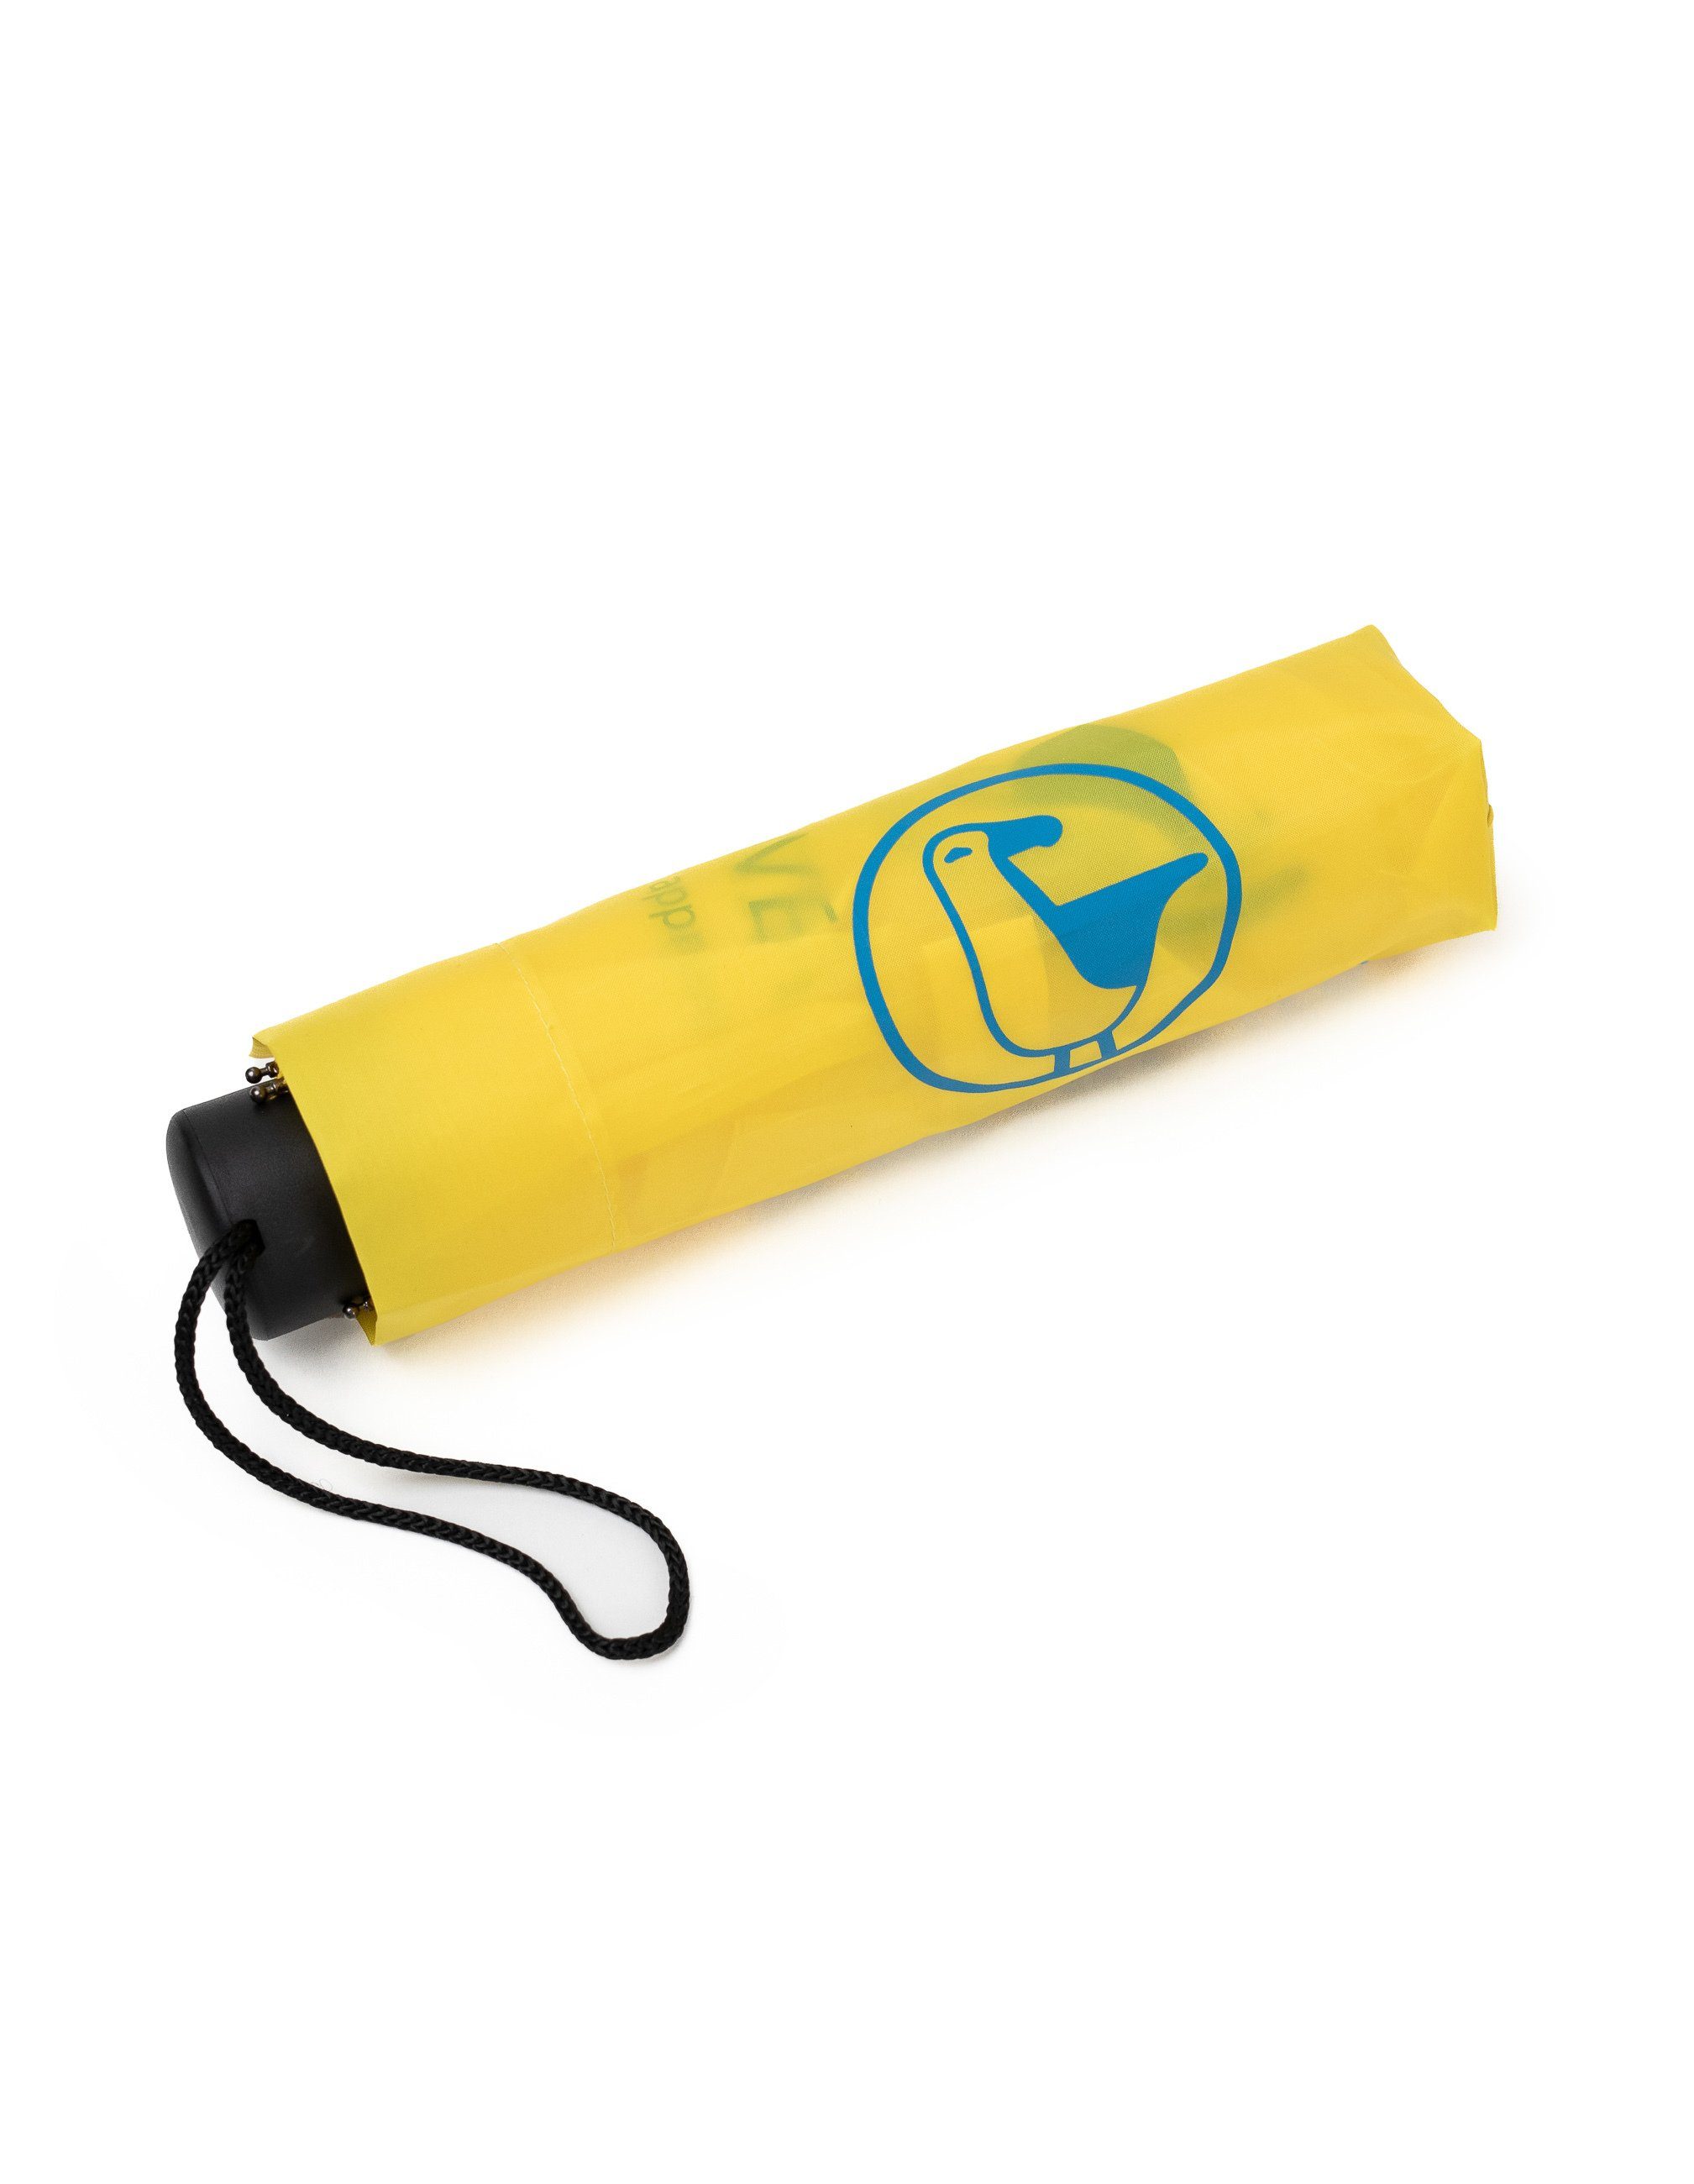 Schietwetter klein Taschenregenschirm Hardware praktisch yellow &